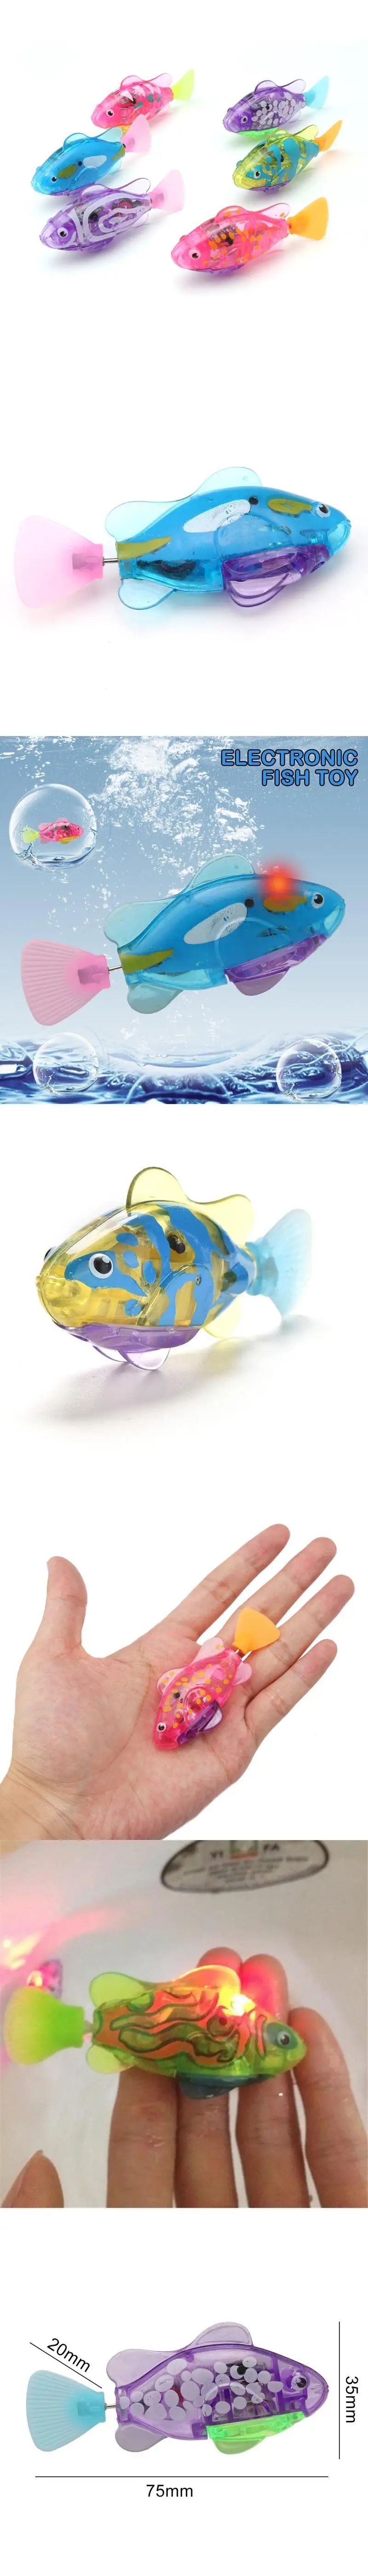 Электронная рыба, активированная на батарейках, игрушка для плавания, детская Роботизированная Игрушка для домашних животных, праздничный подарок, может плавать